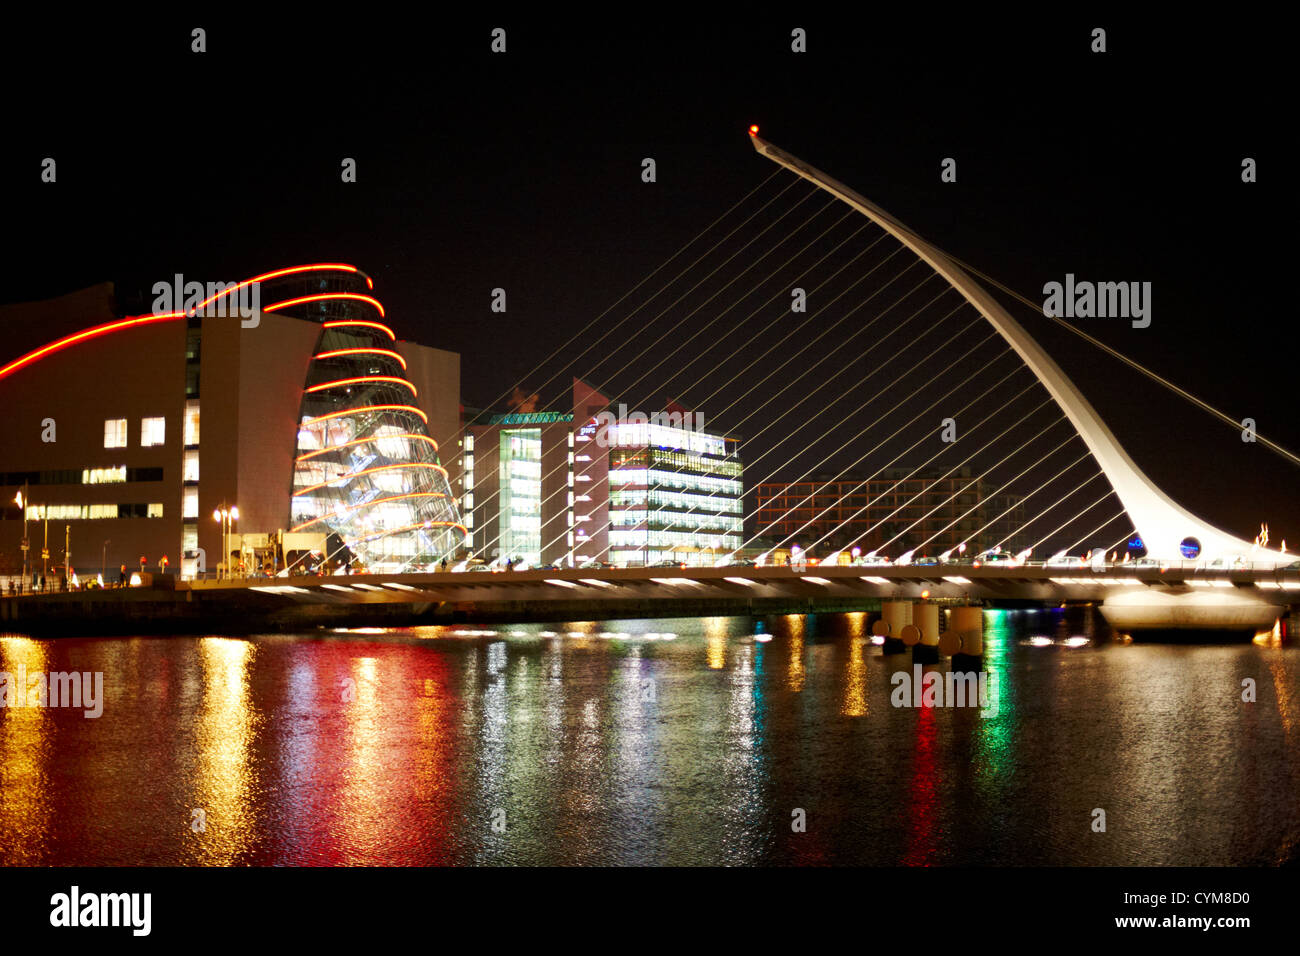 Vista de Samuel Beckett, puente sobre el río Liffey y el centro de convenciones de Dublín por la noche, Dublín, República de Irlanda Foto de stock